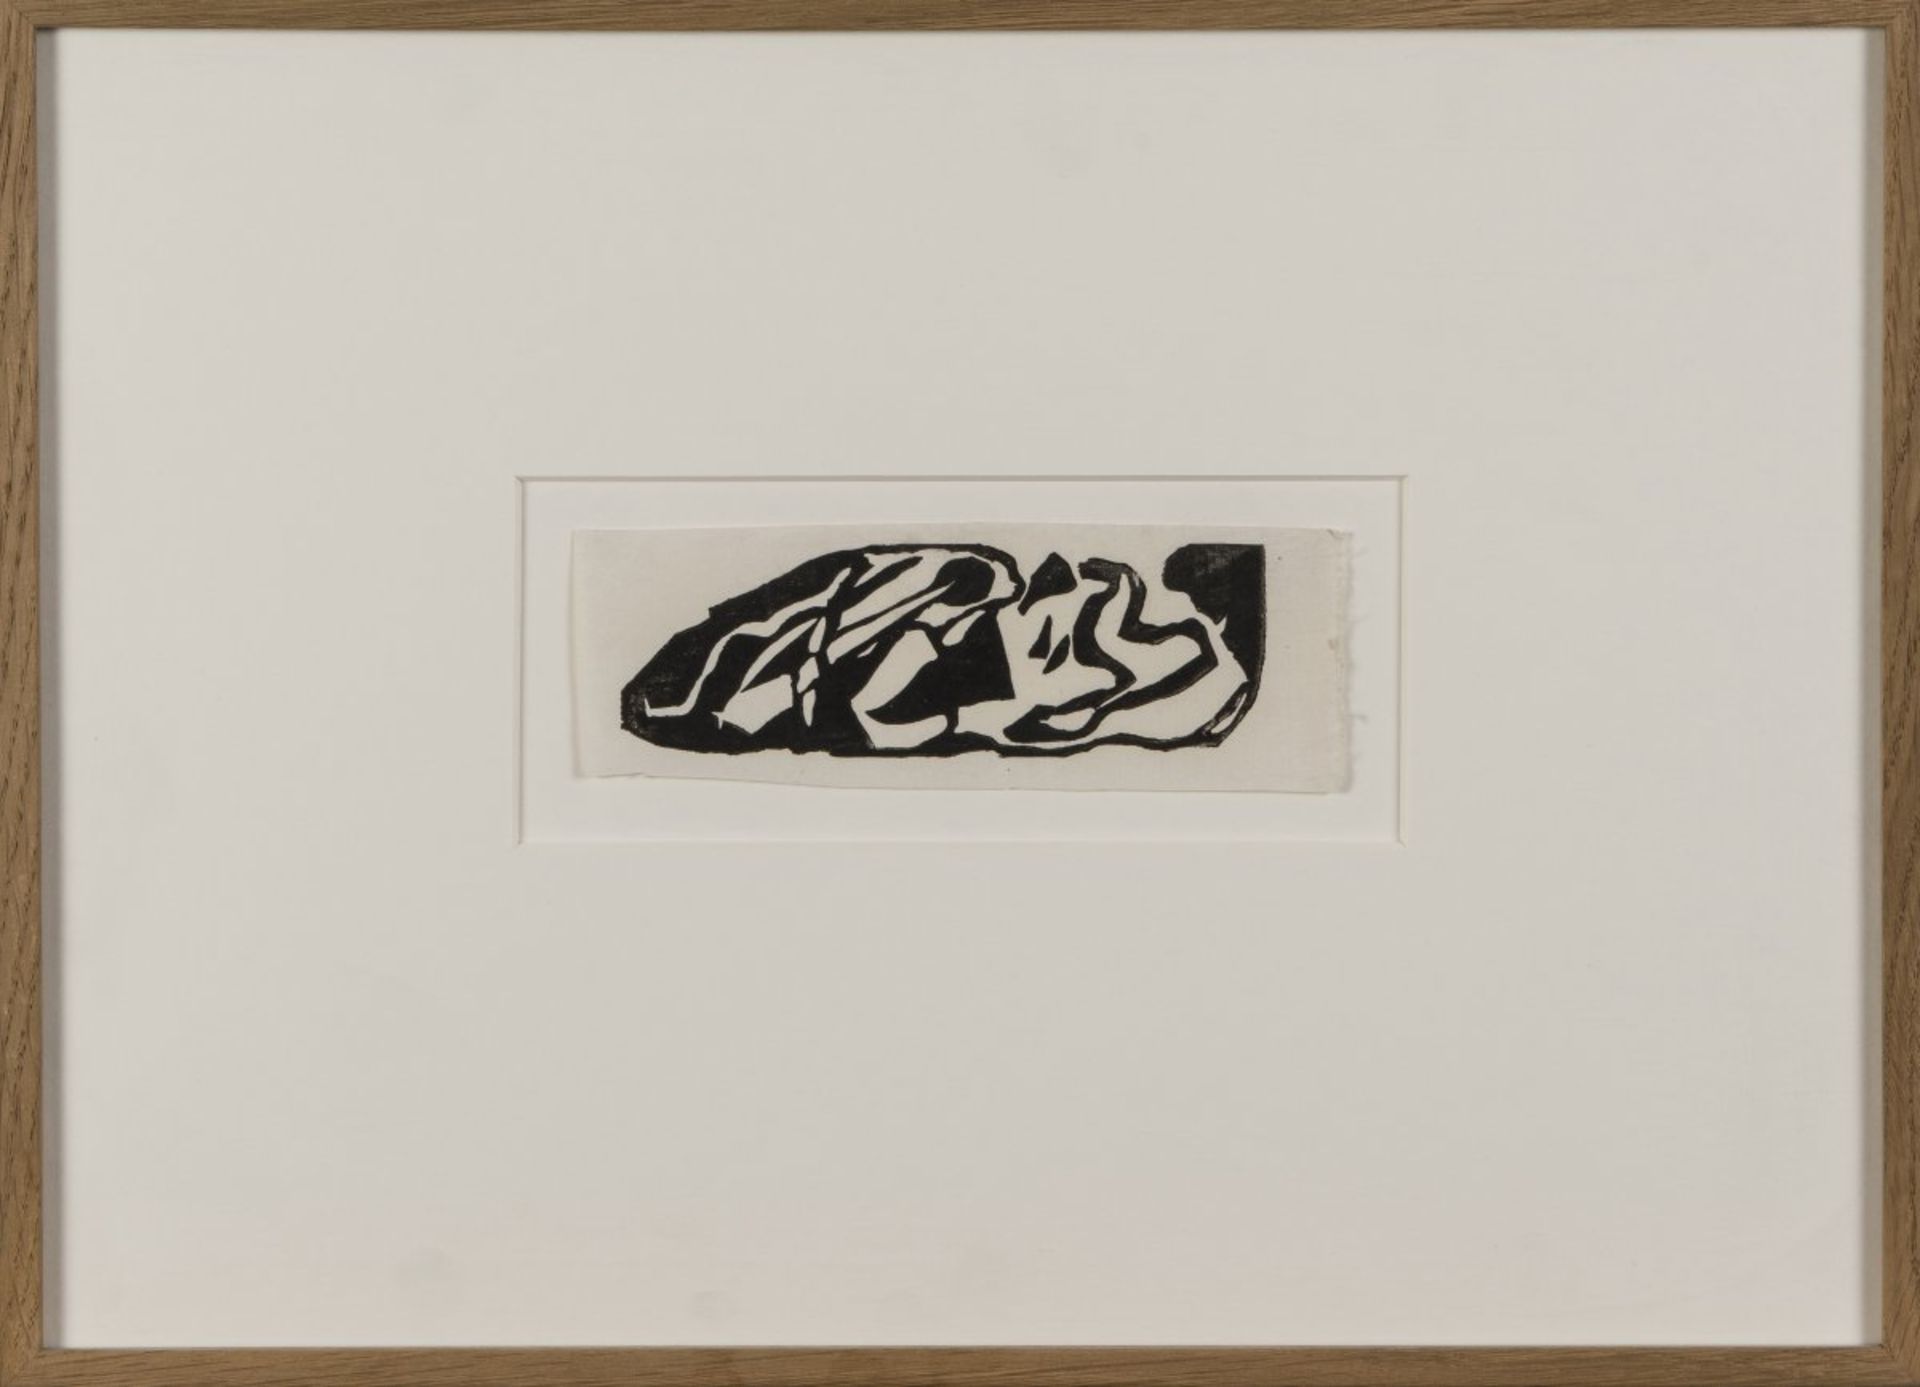 Wassily Kandinsky, 9 vignettes from 'Über das Geistige in der Kunst' and 'Klänge', all 1911